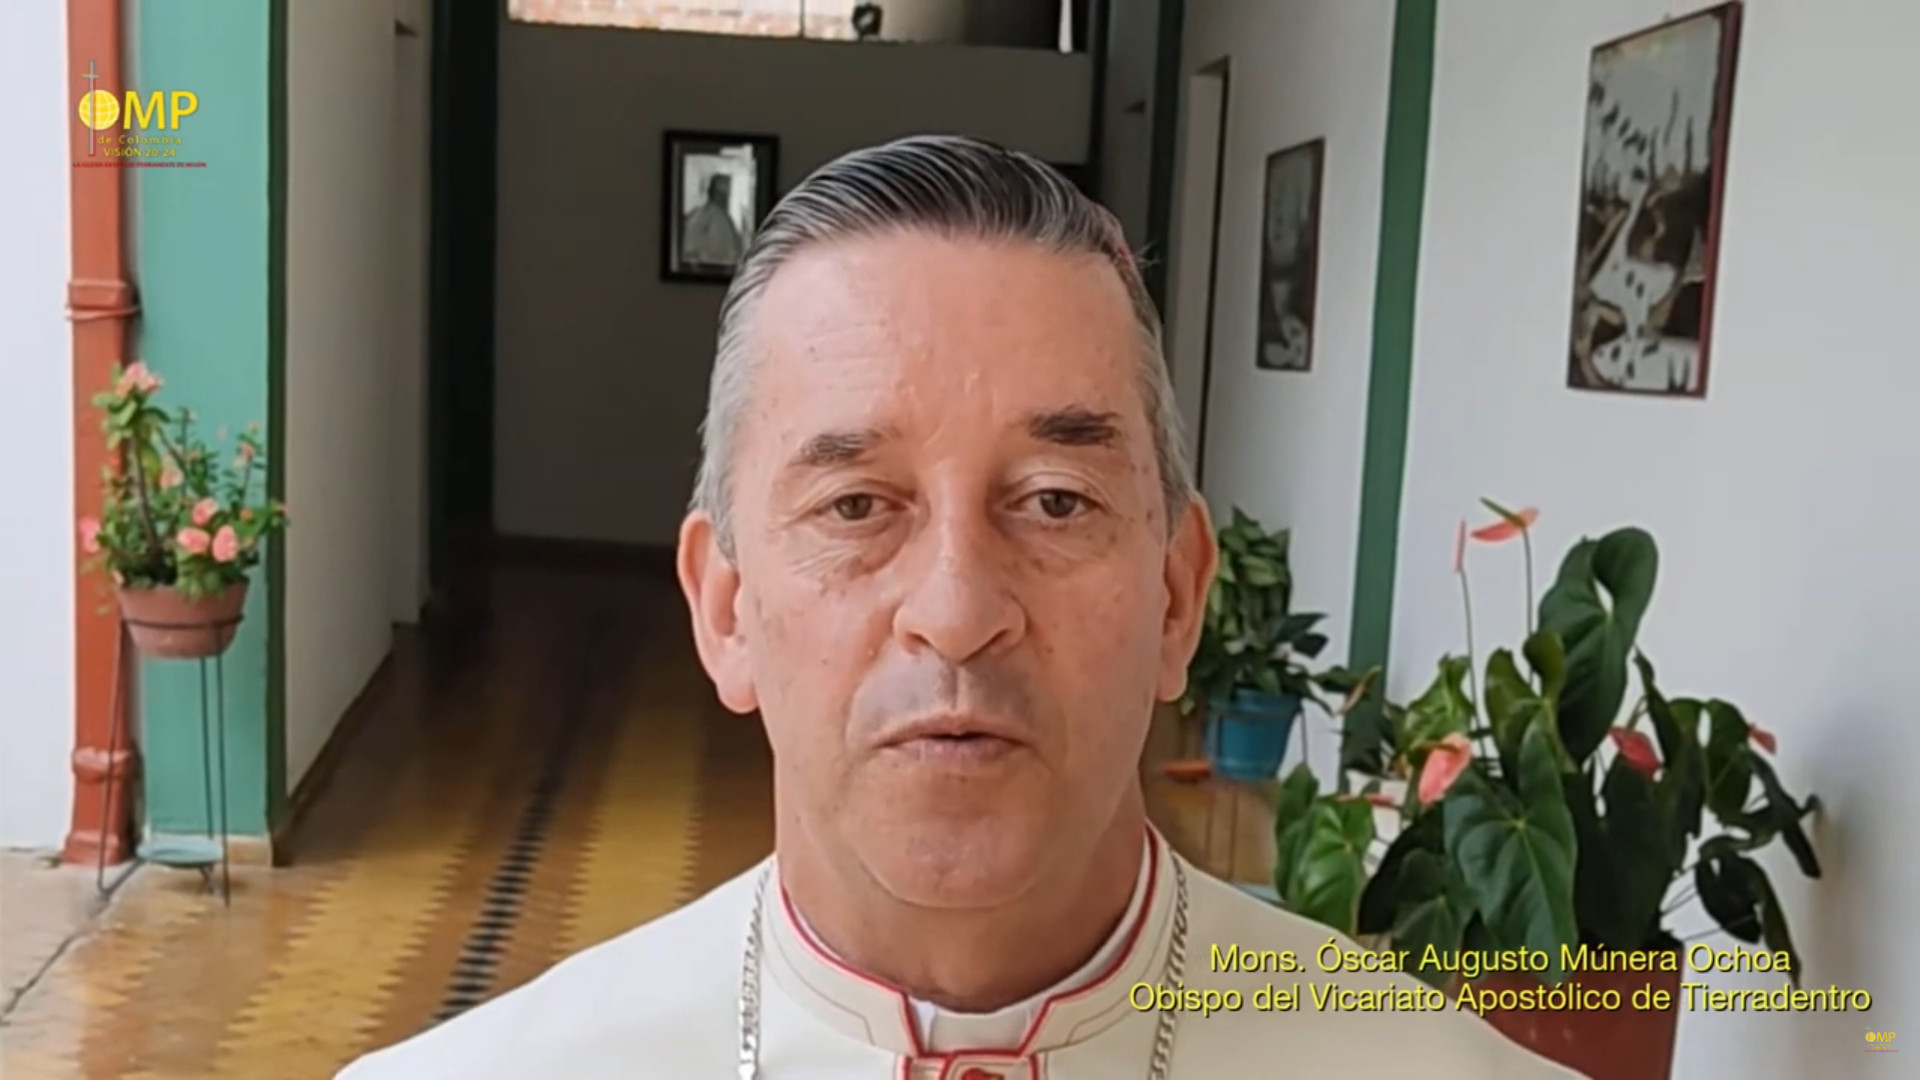 El Papa acepta la renuncia de un obispo colombiano acusado en un libro de abusos sexuales